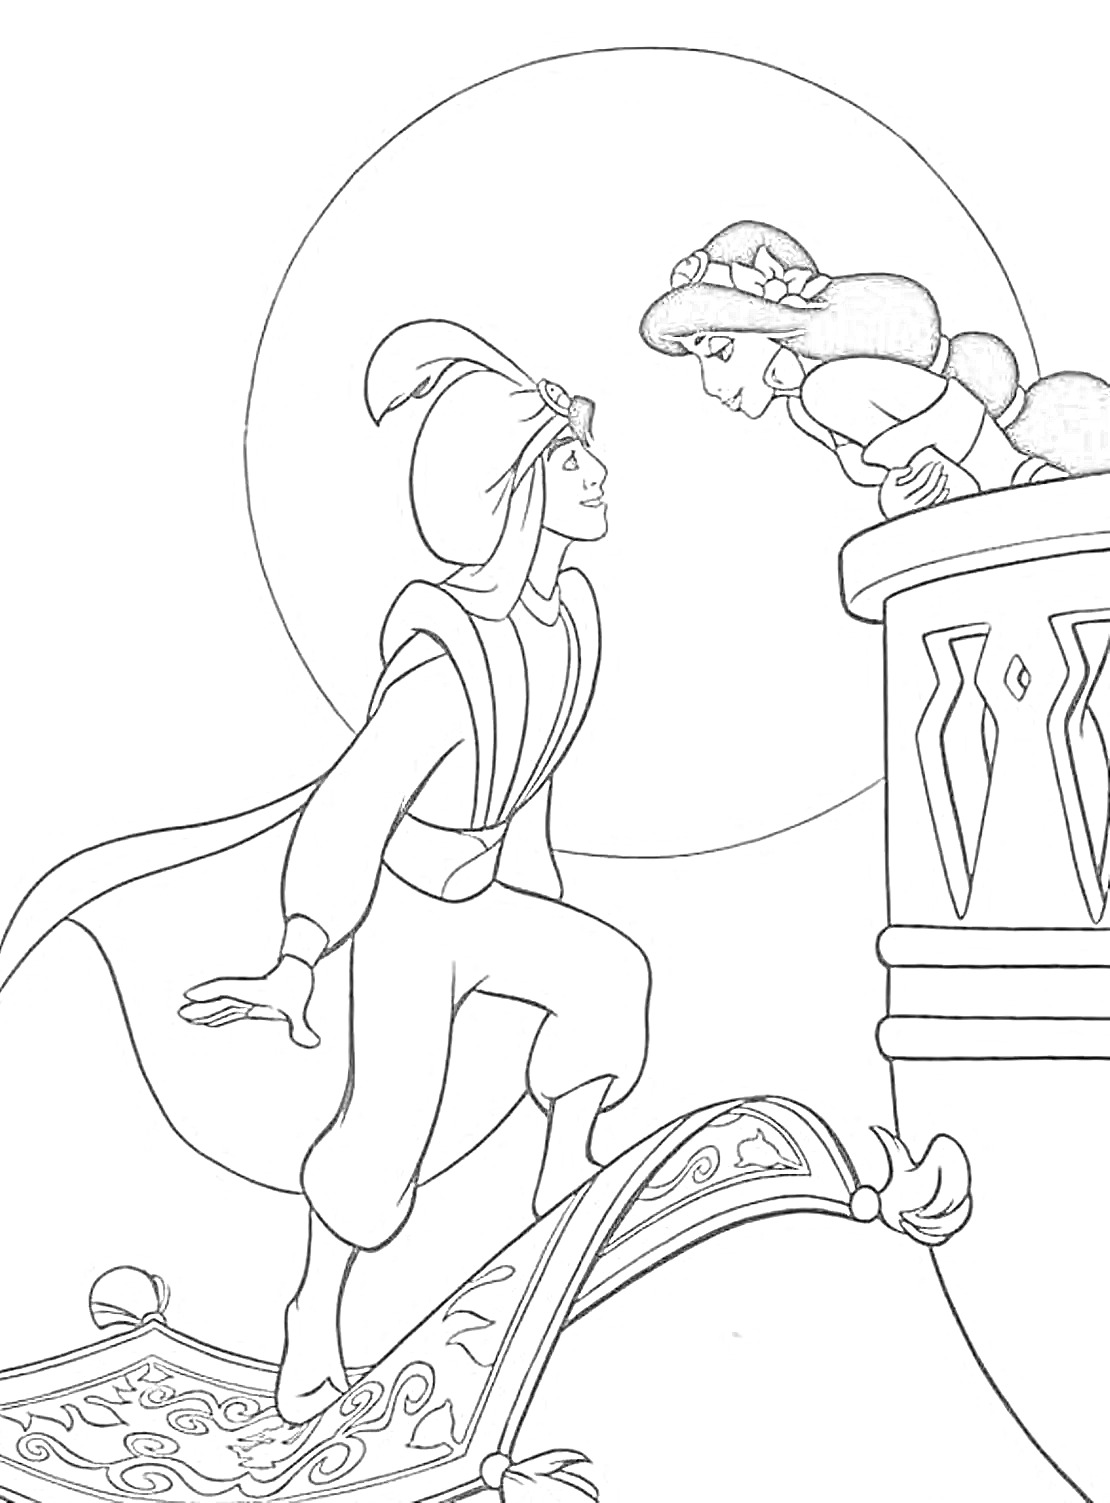 Раскраска Алладин на летающем ковре общается с девушкой, сидящей на балконе